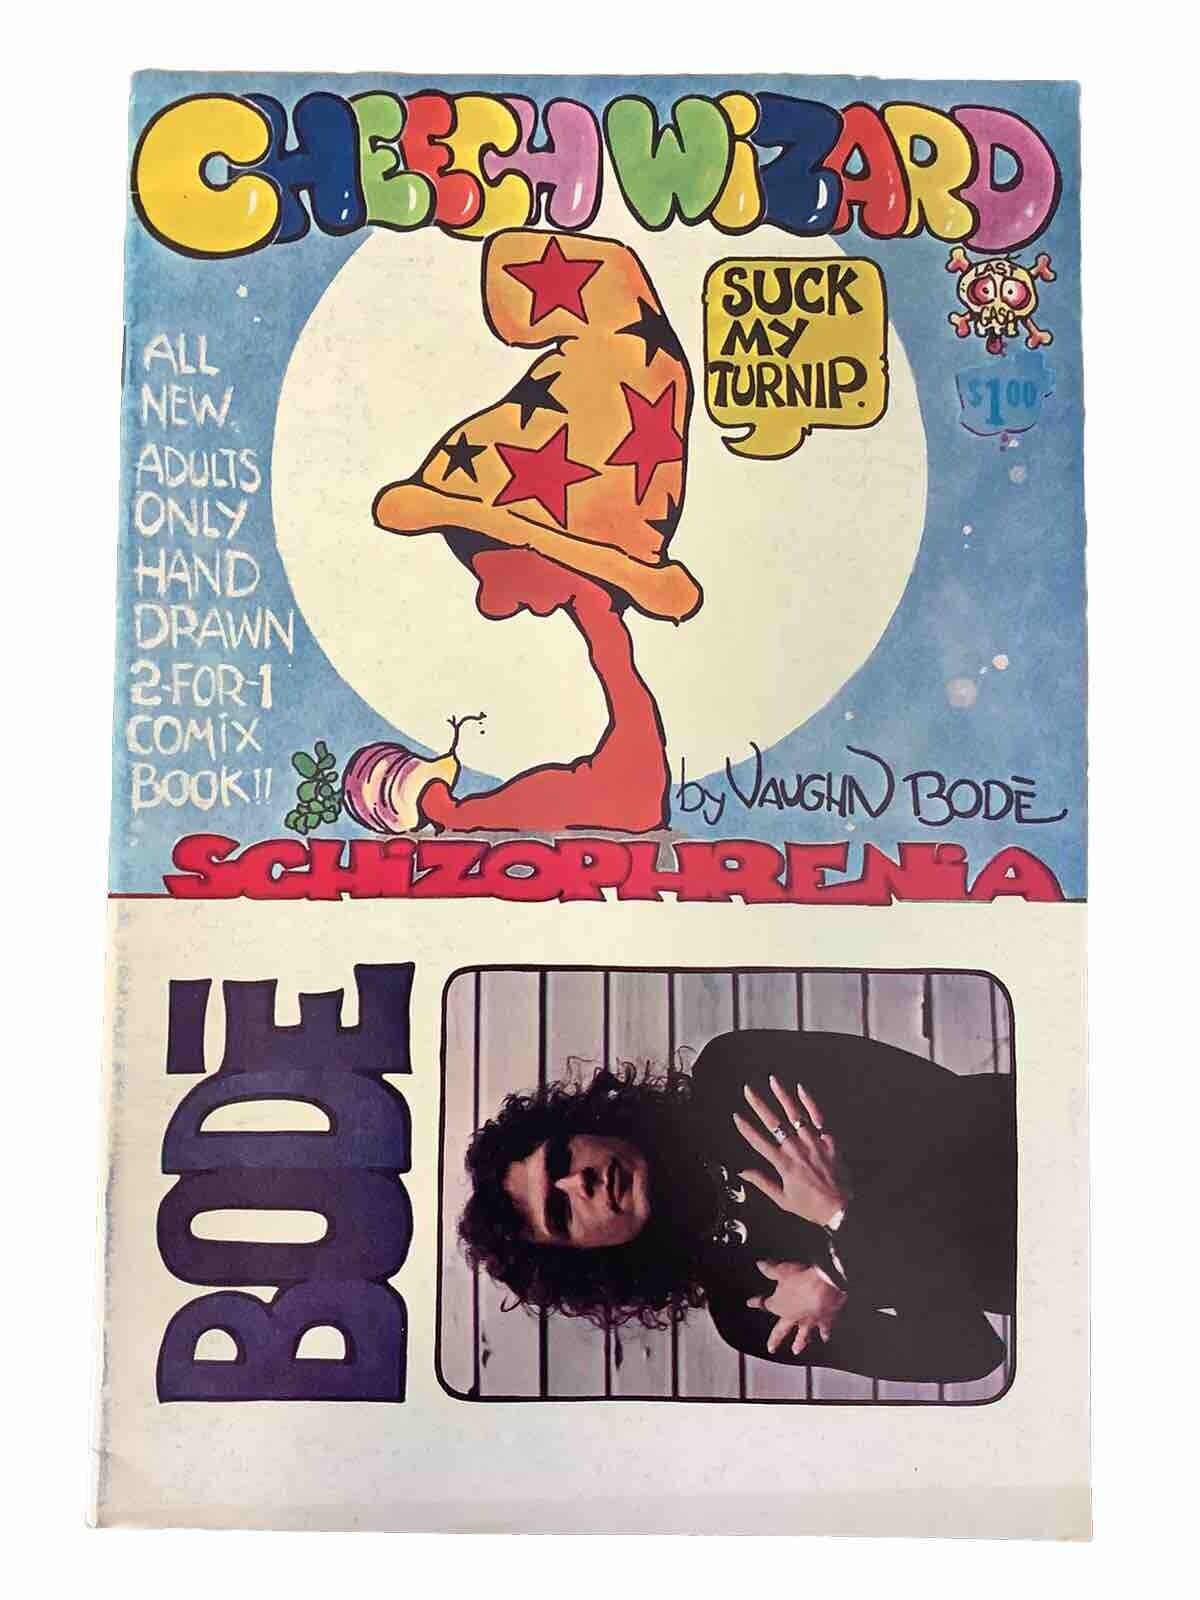 Cheech Wizard Schizophrenia Last Gasp 1973 Underground Comic Book